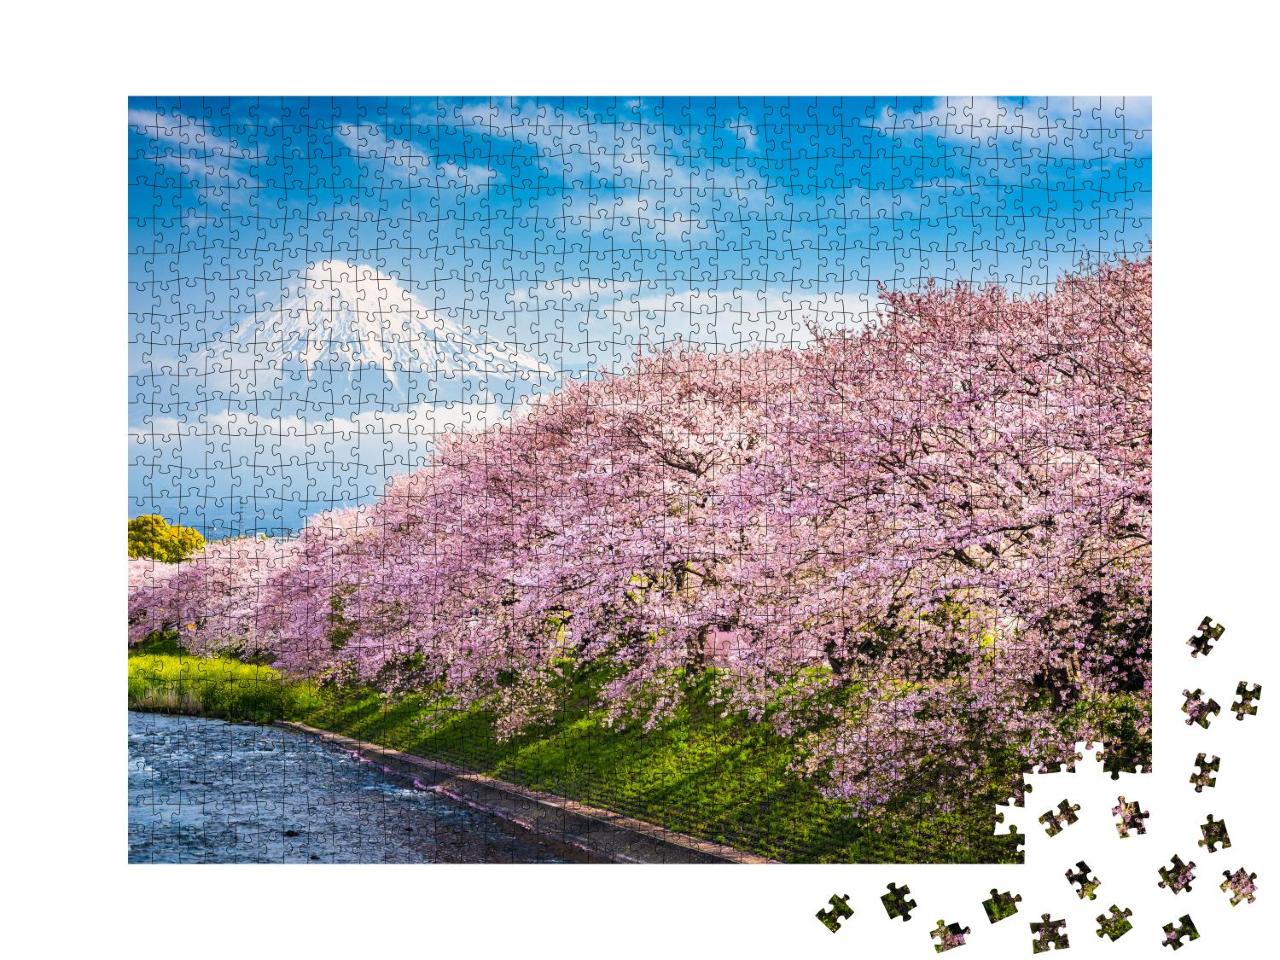 Puzzle 1000 Teile „Berg Fuji, im Vordergrund Sakura, die japanische Kirschblüte“